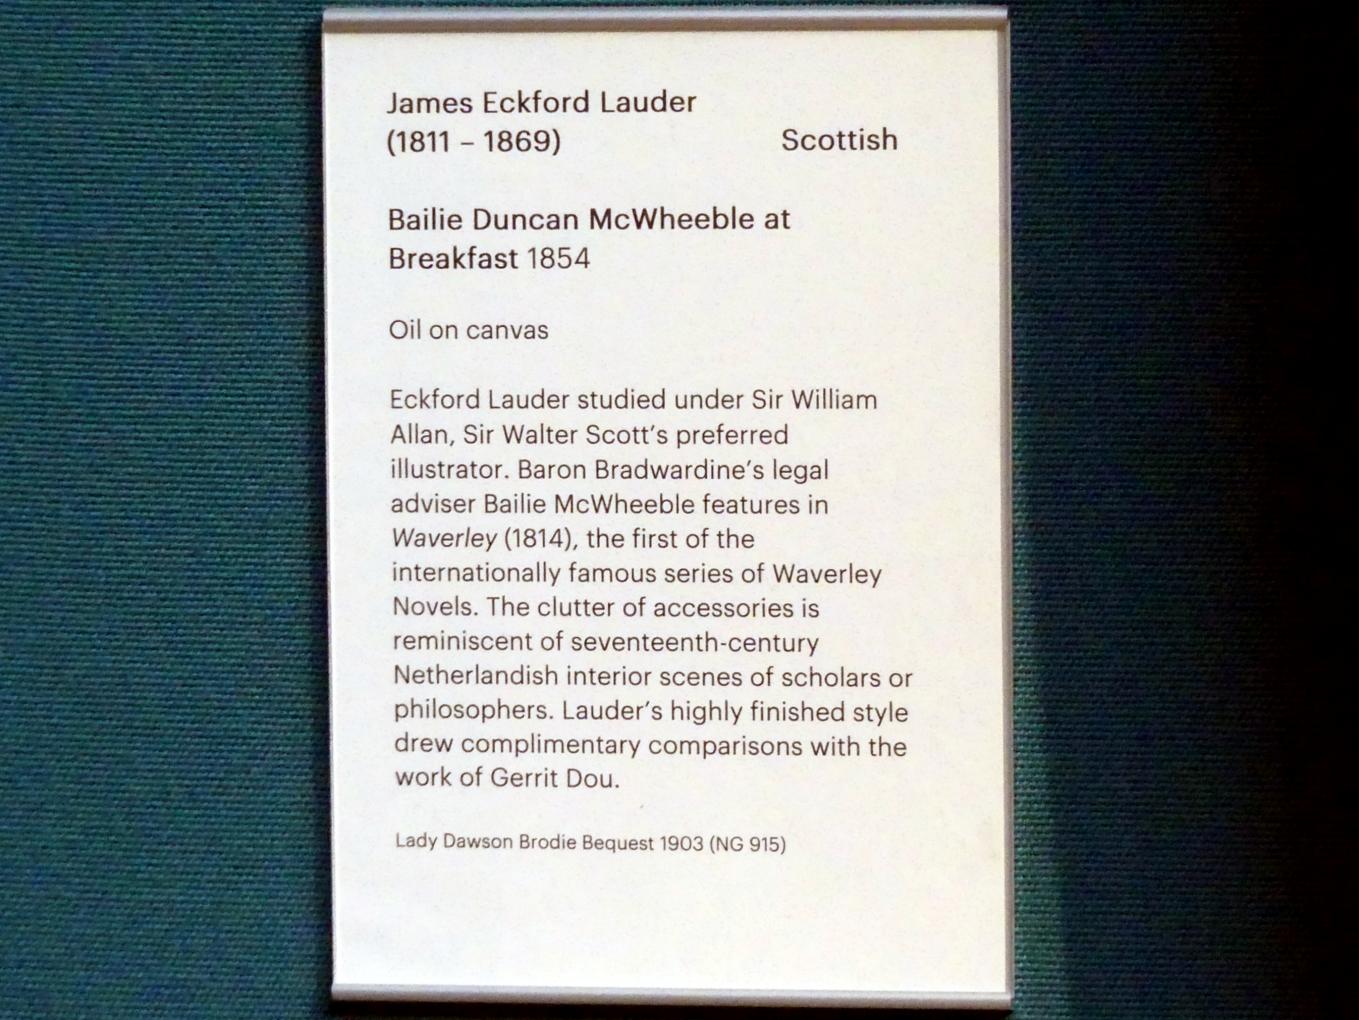 James Eckford Lauder (1854), Bailie Duncan McWheeble beim Frühstück, Edinburgh, Scottish National Gallery, Saal 17, Einhundert Jahre Schottische Kunst 1820-1920, 1854, Bild 2/2